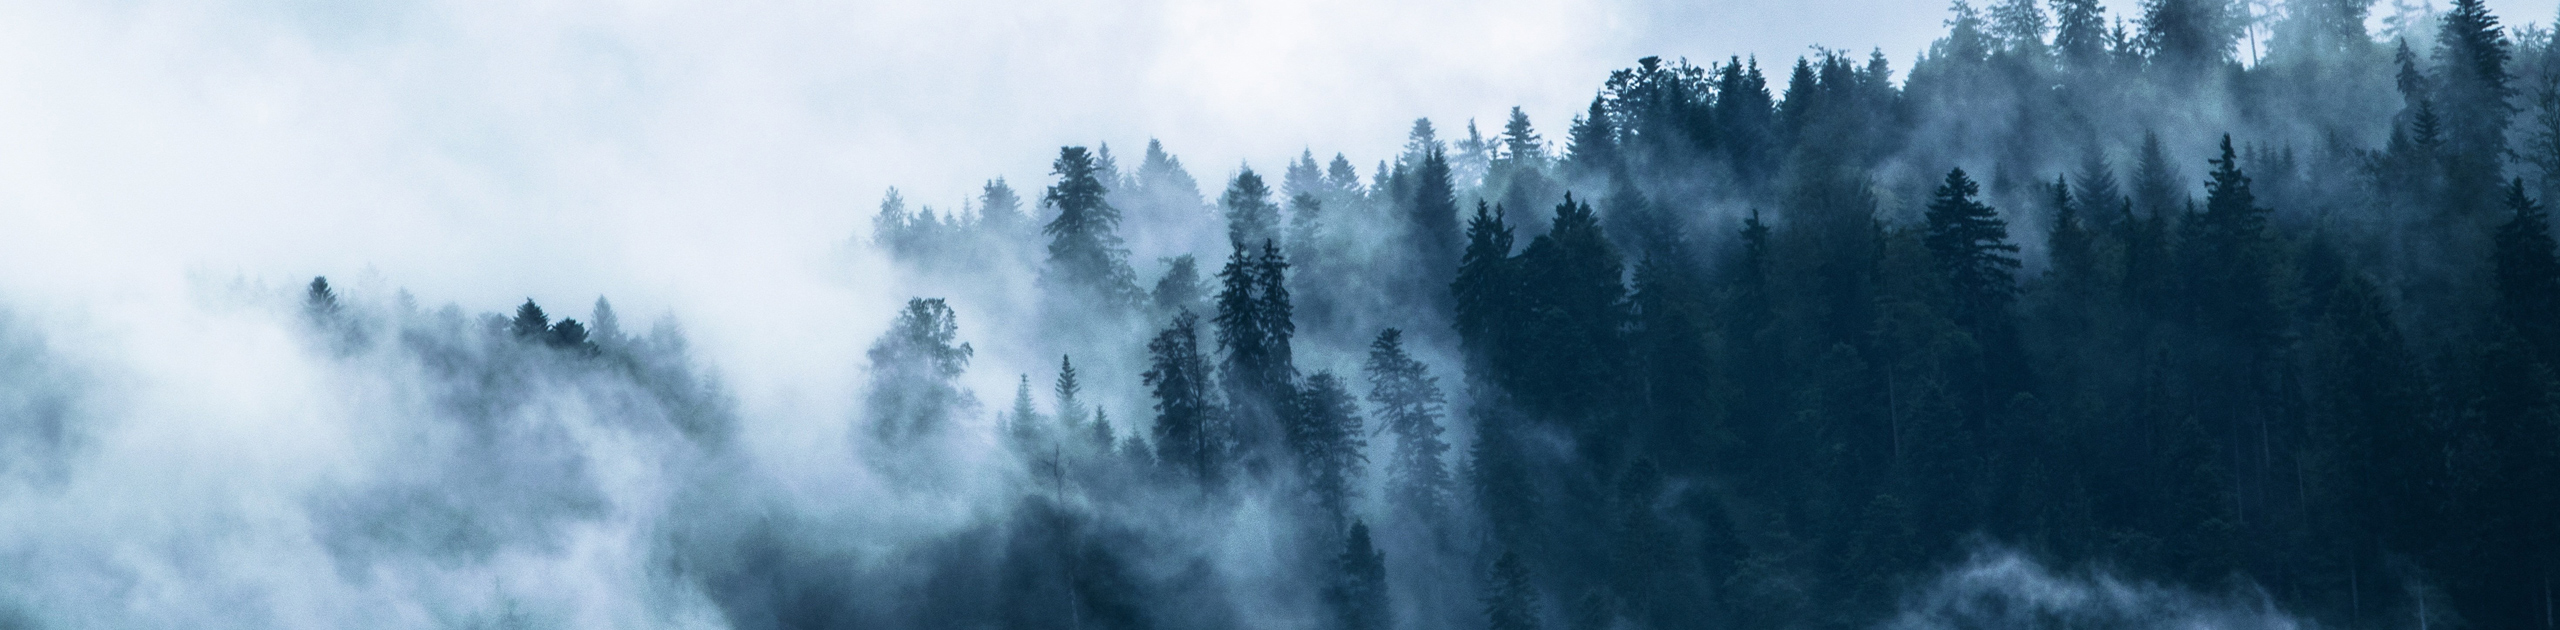 Nebel liegt über einem Wald, Foto: Pixabay